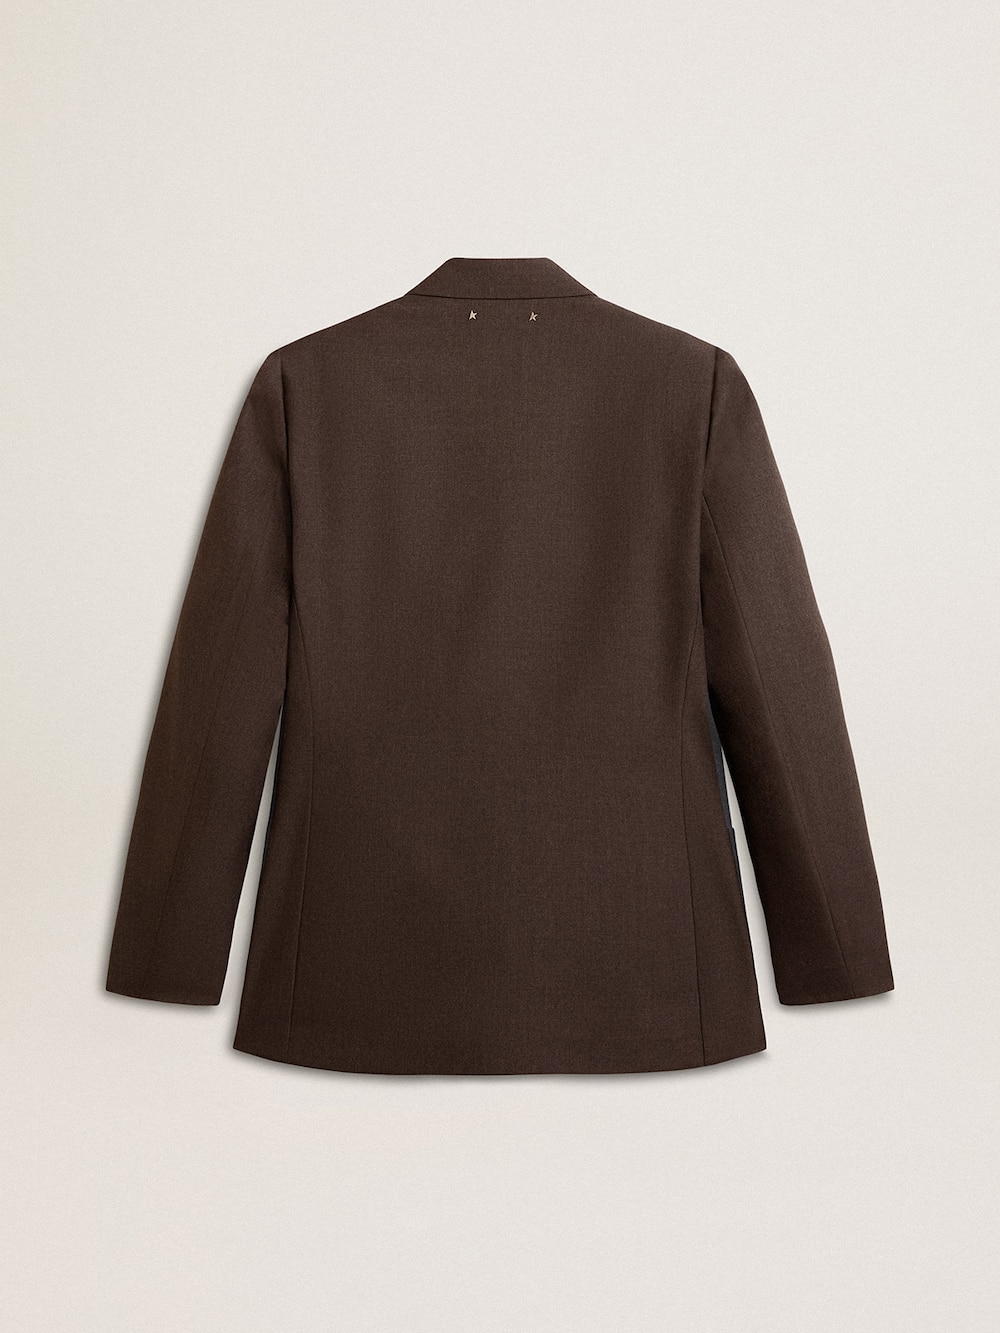 Golden Goose - Men's tailored jacket in anthracite gray virgin wool in 